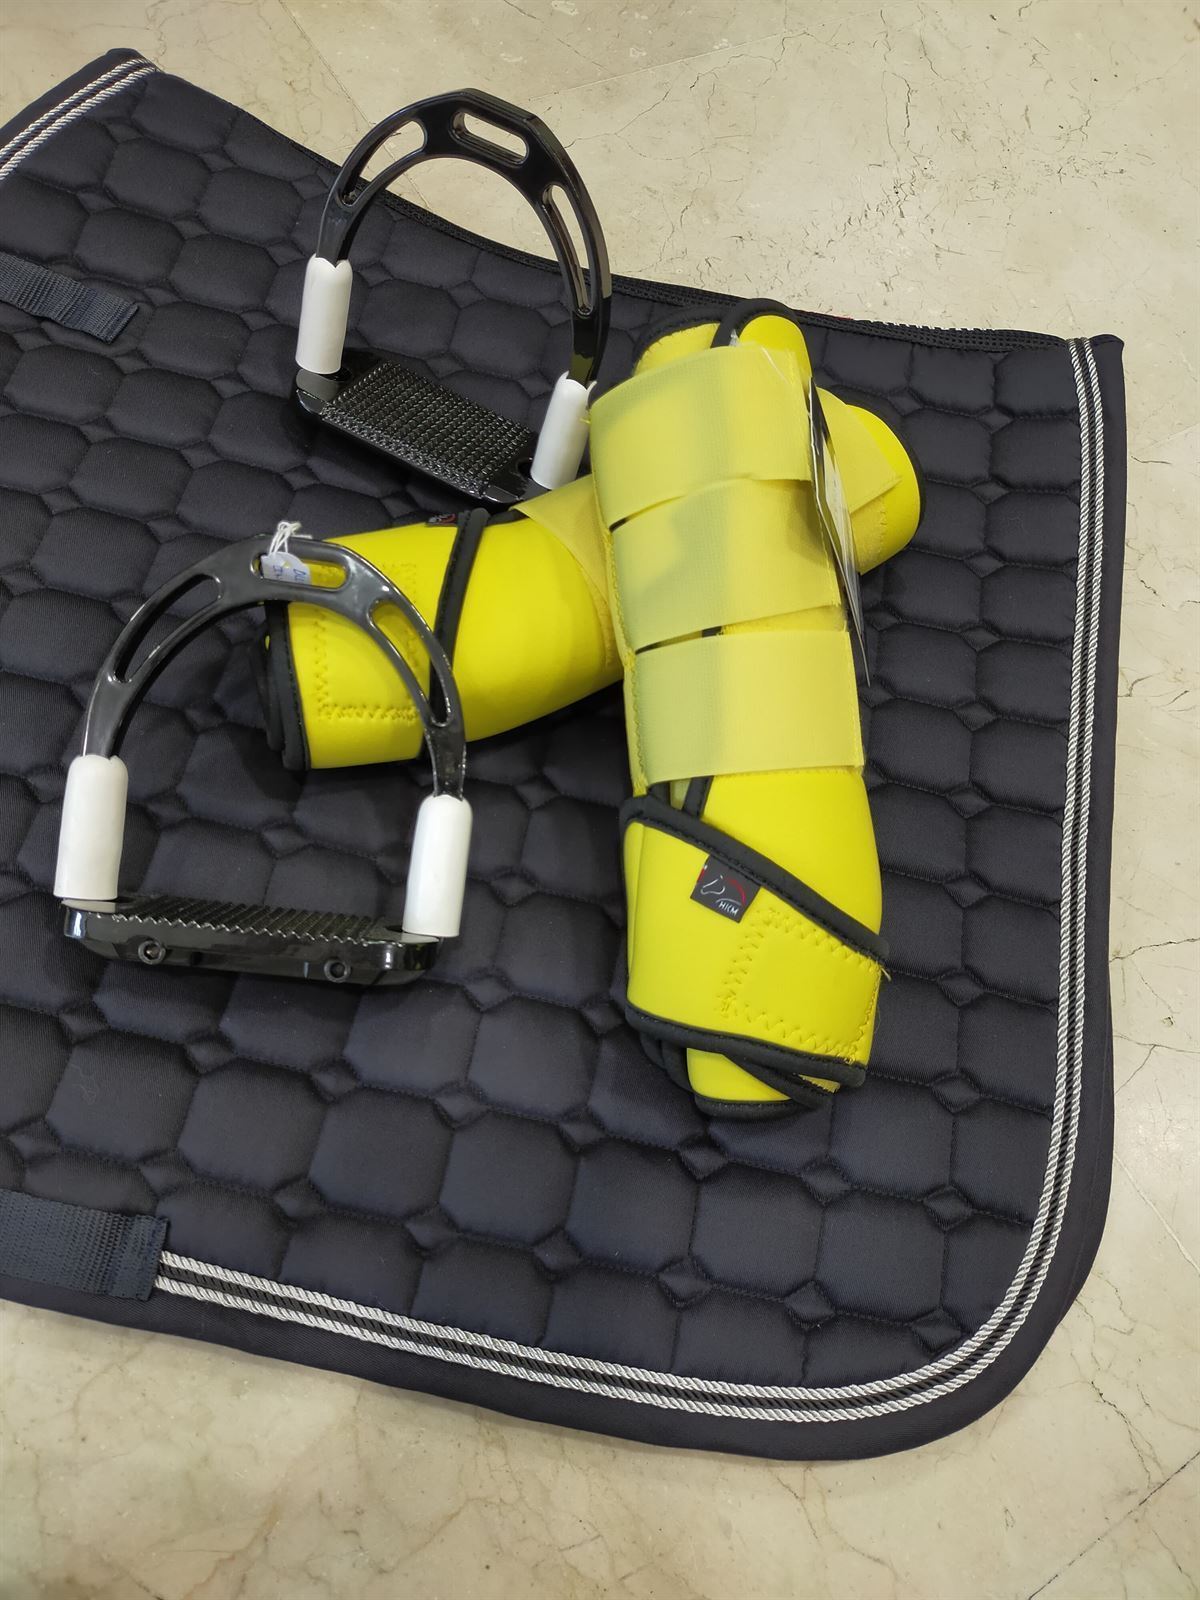 Protectores HKM Sports Equipment de softopren amarillo talla L (par) - Imagen 3